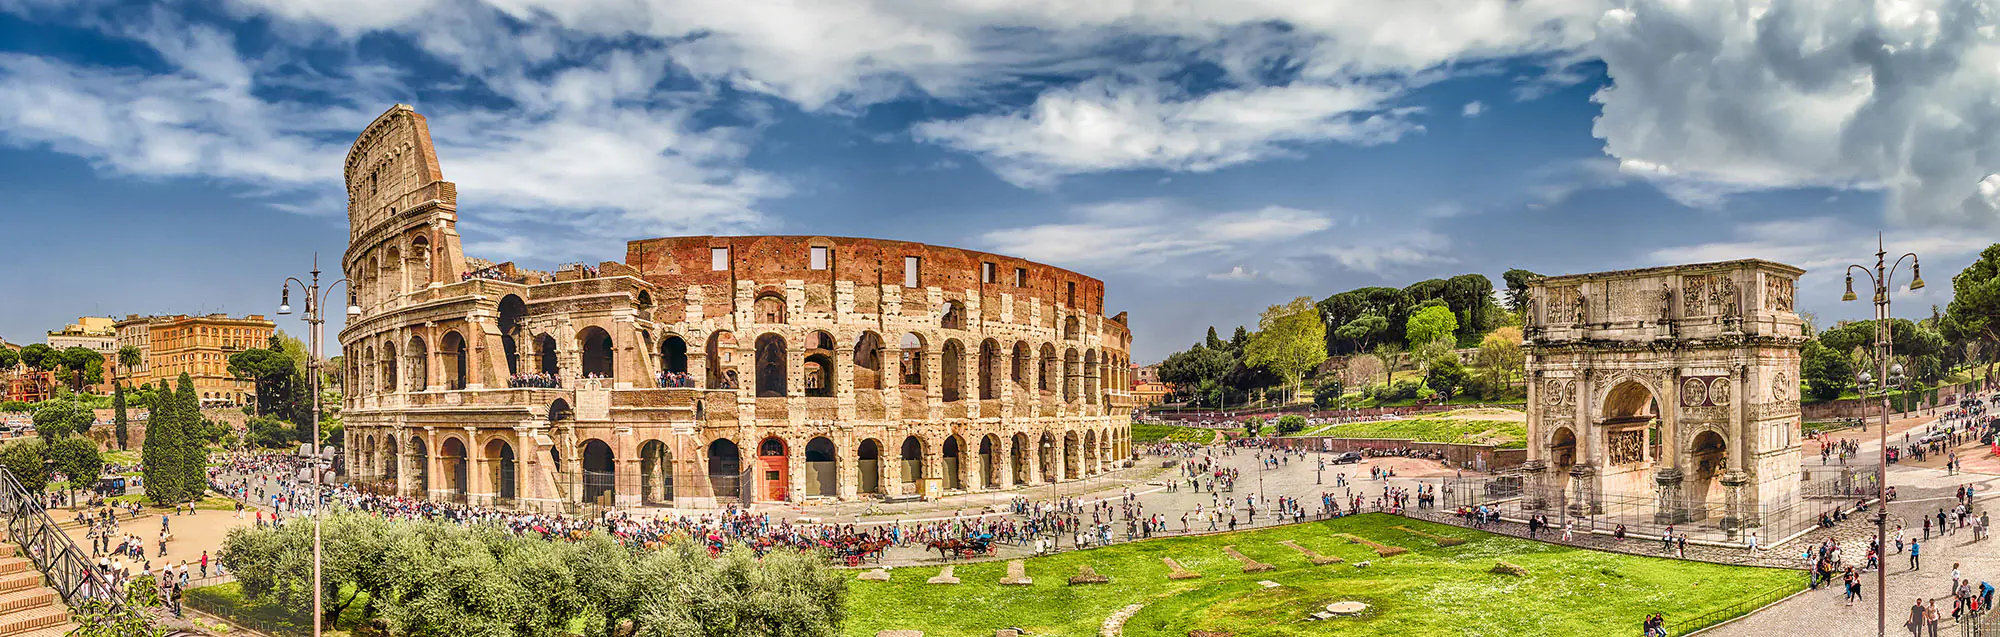 Escuelas de italiano para adultos, niños y adolescentes en Roma